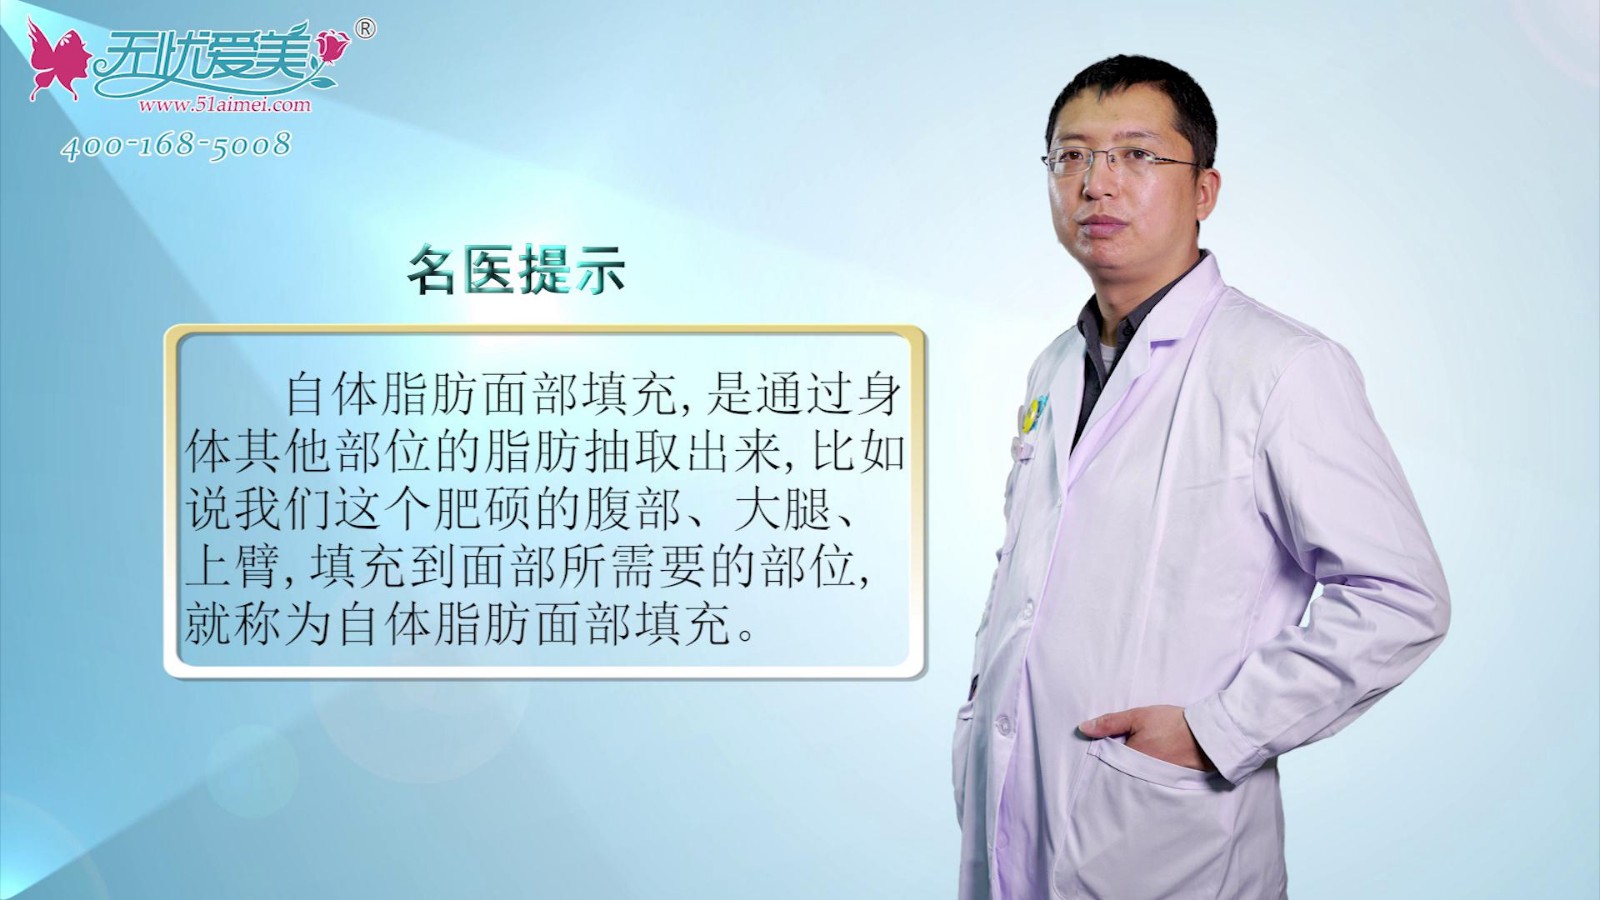 你了解自体脂肪面部填充吗？北京海医悦美李广学视频告知